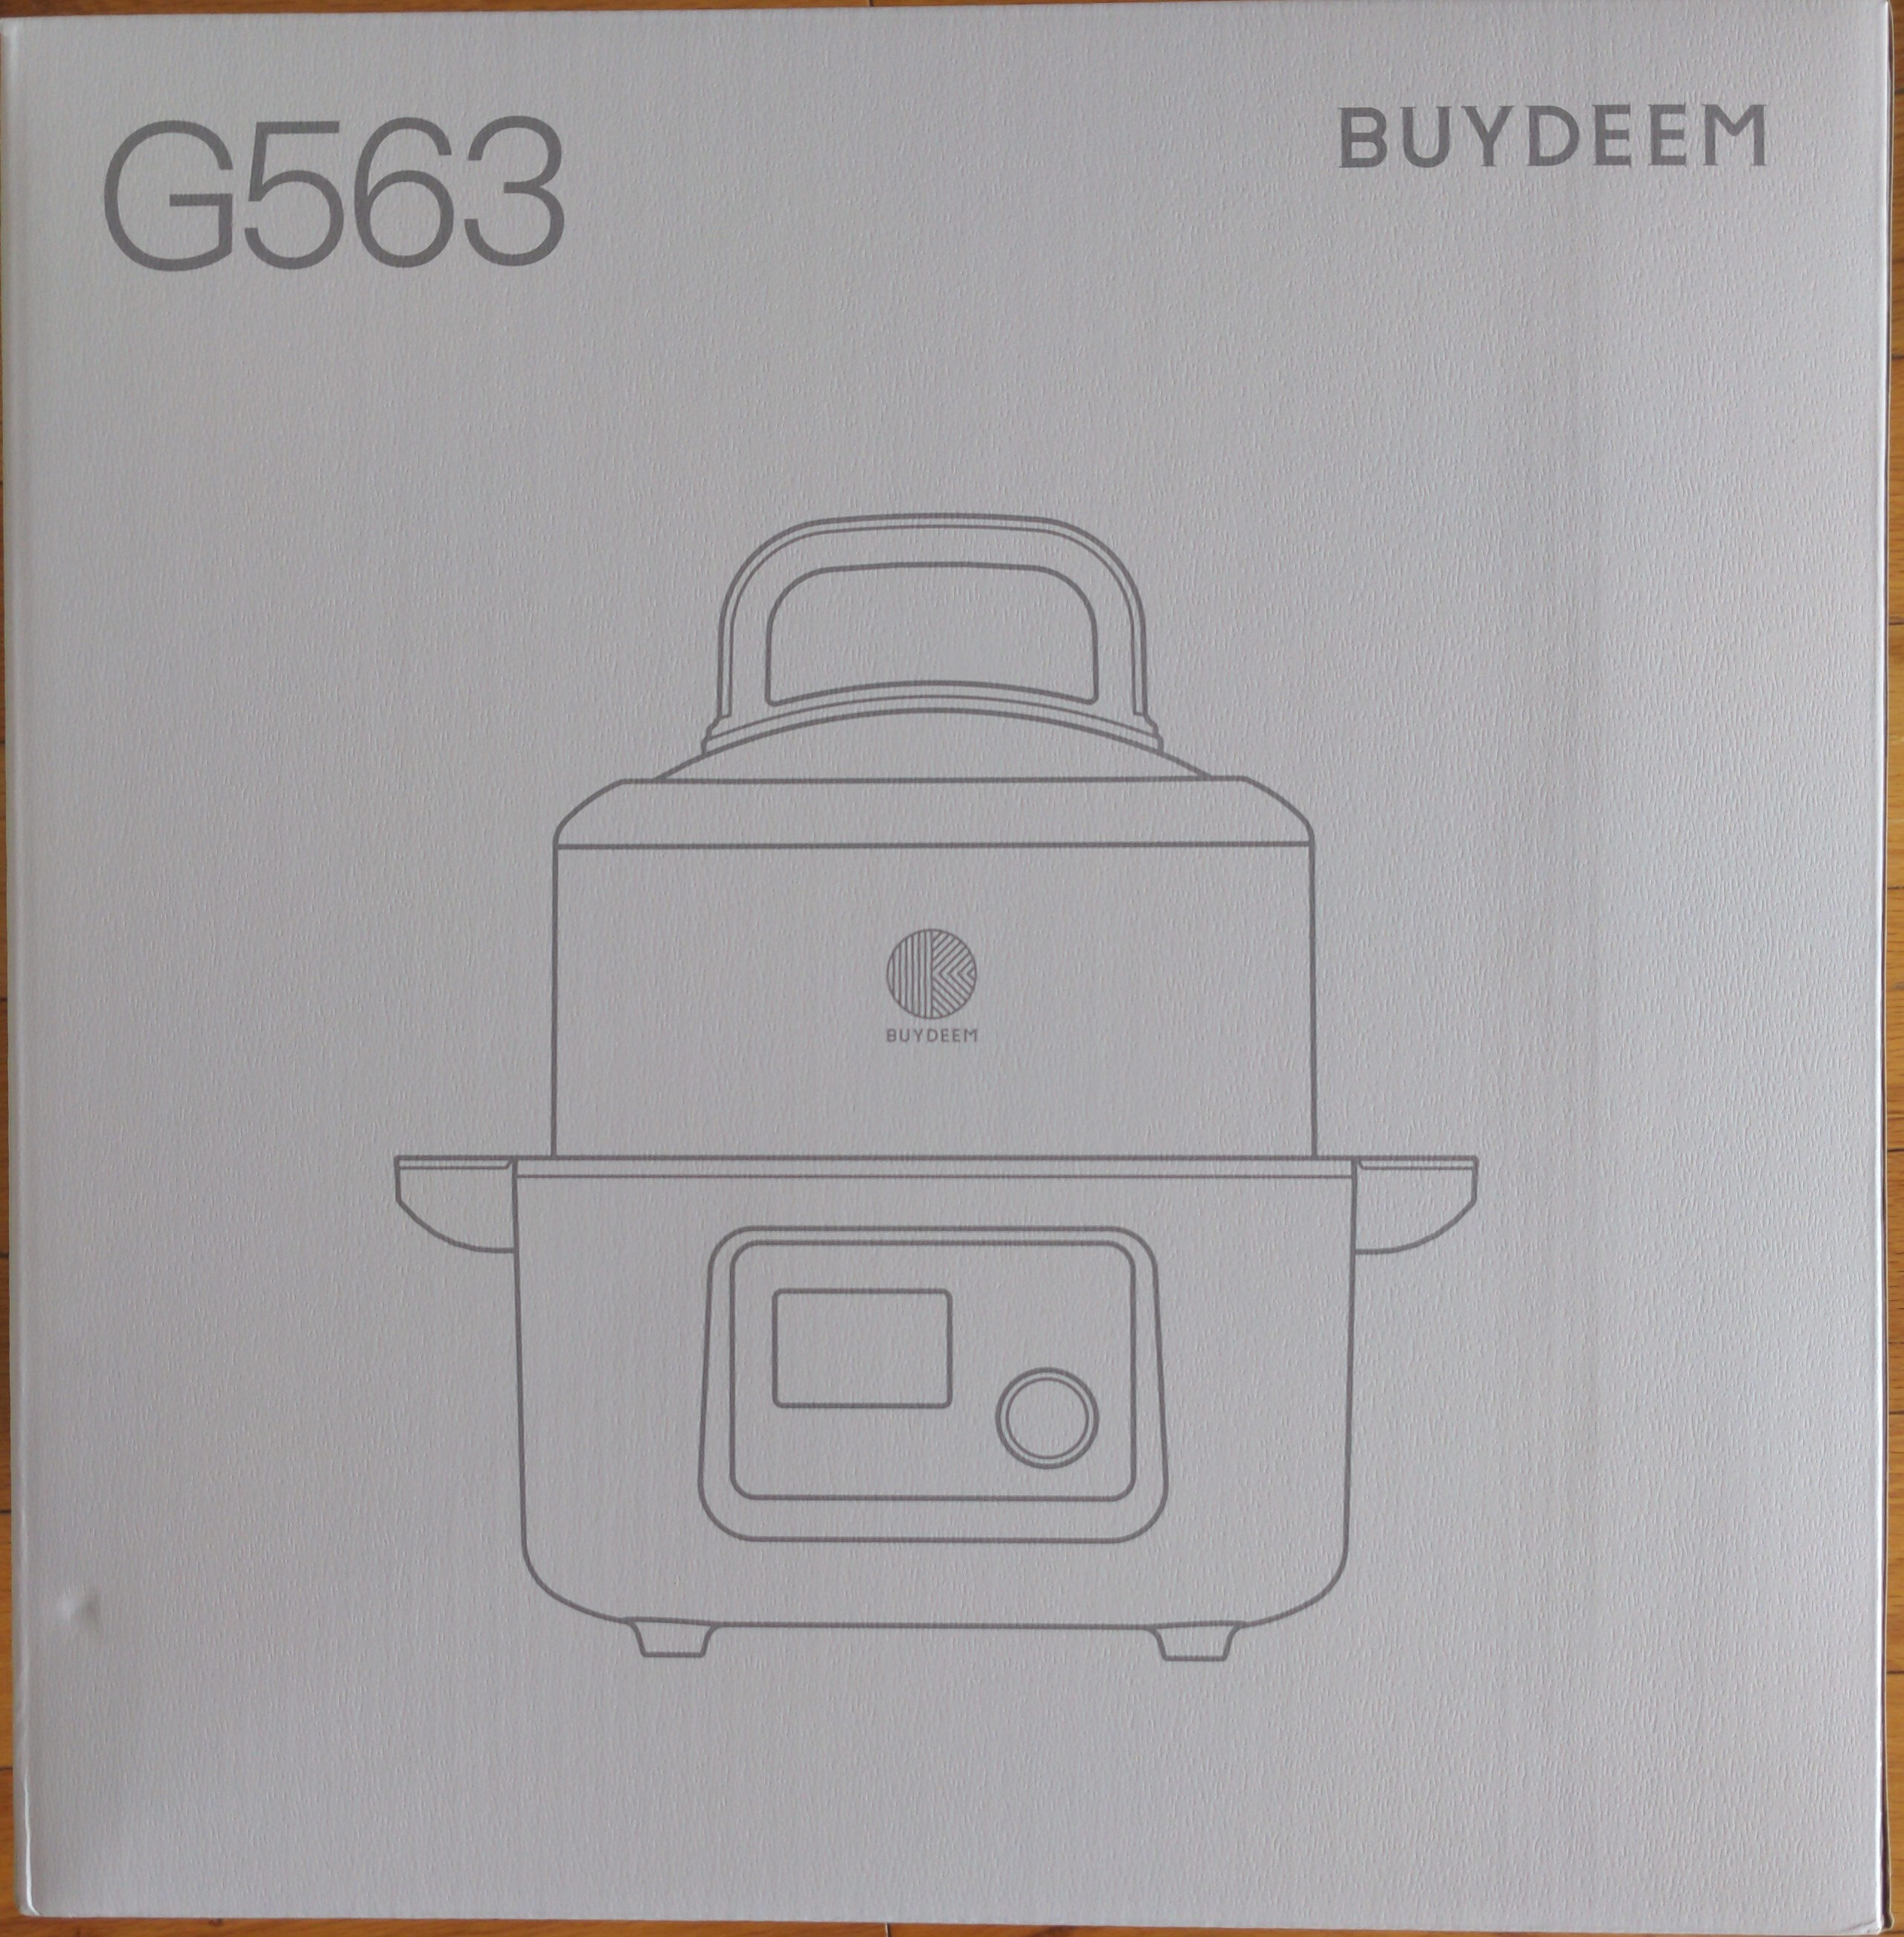 G563 - Produit - fr